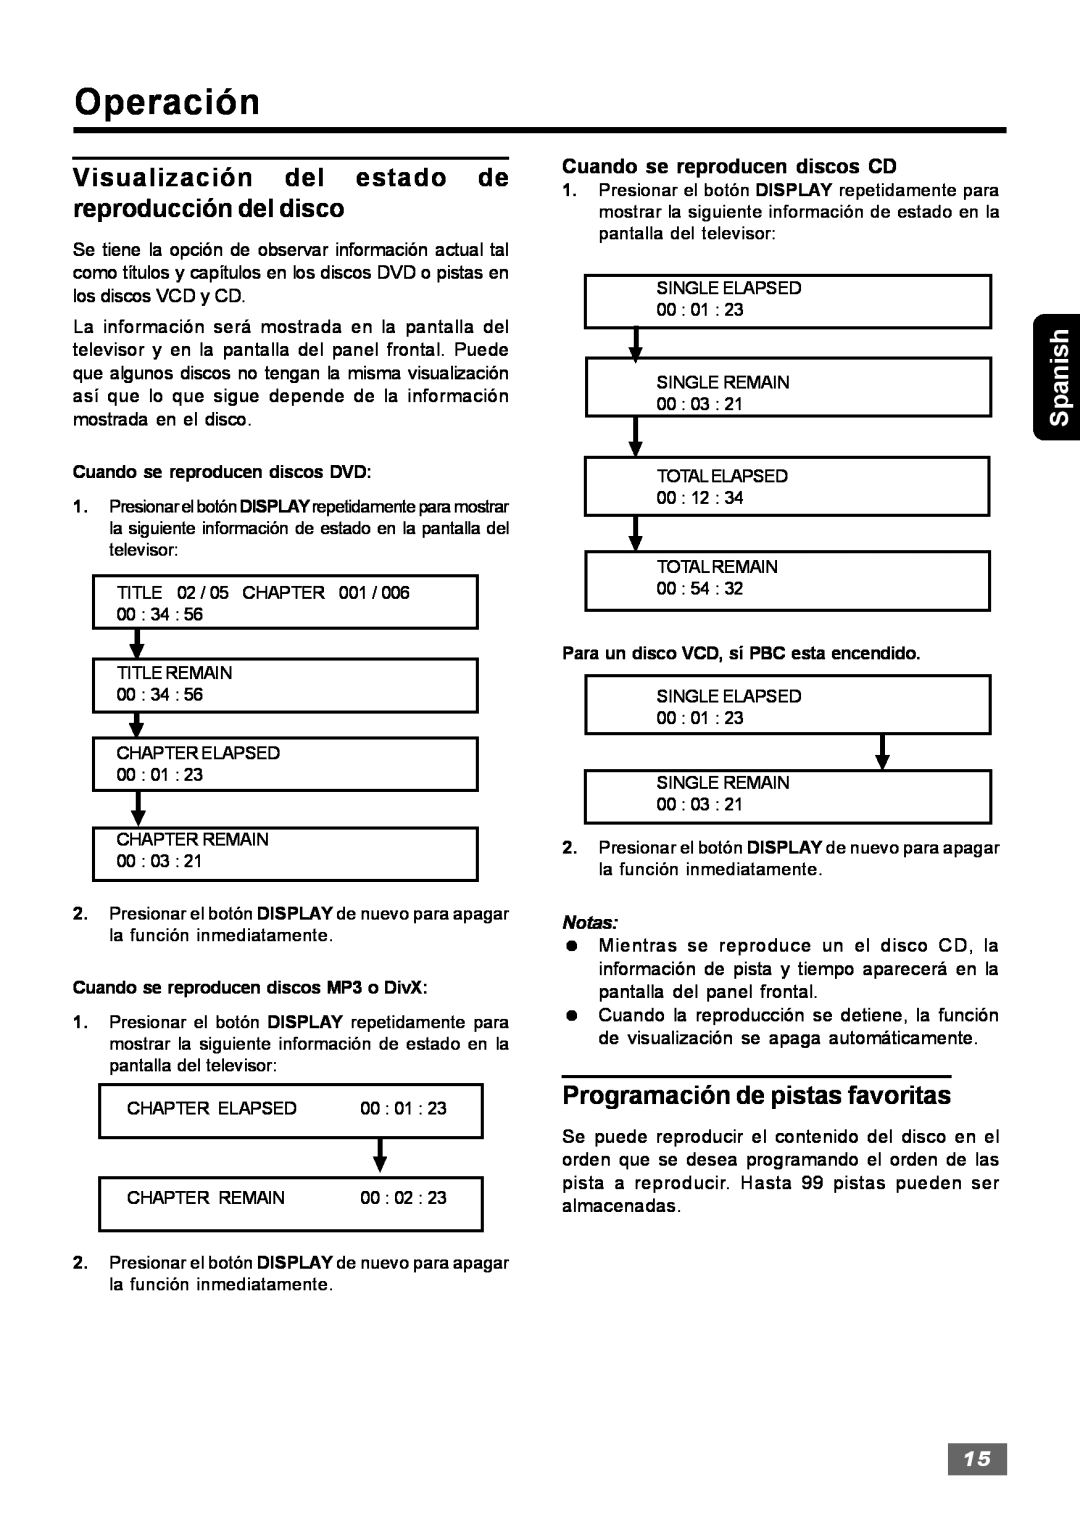 Insignia IS-HTIB102731 owner manual Programación de pistas favoritas, Operación, Spanish, Cuando se reproducen discos CD 